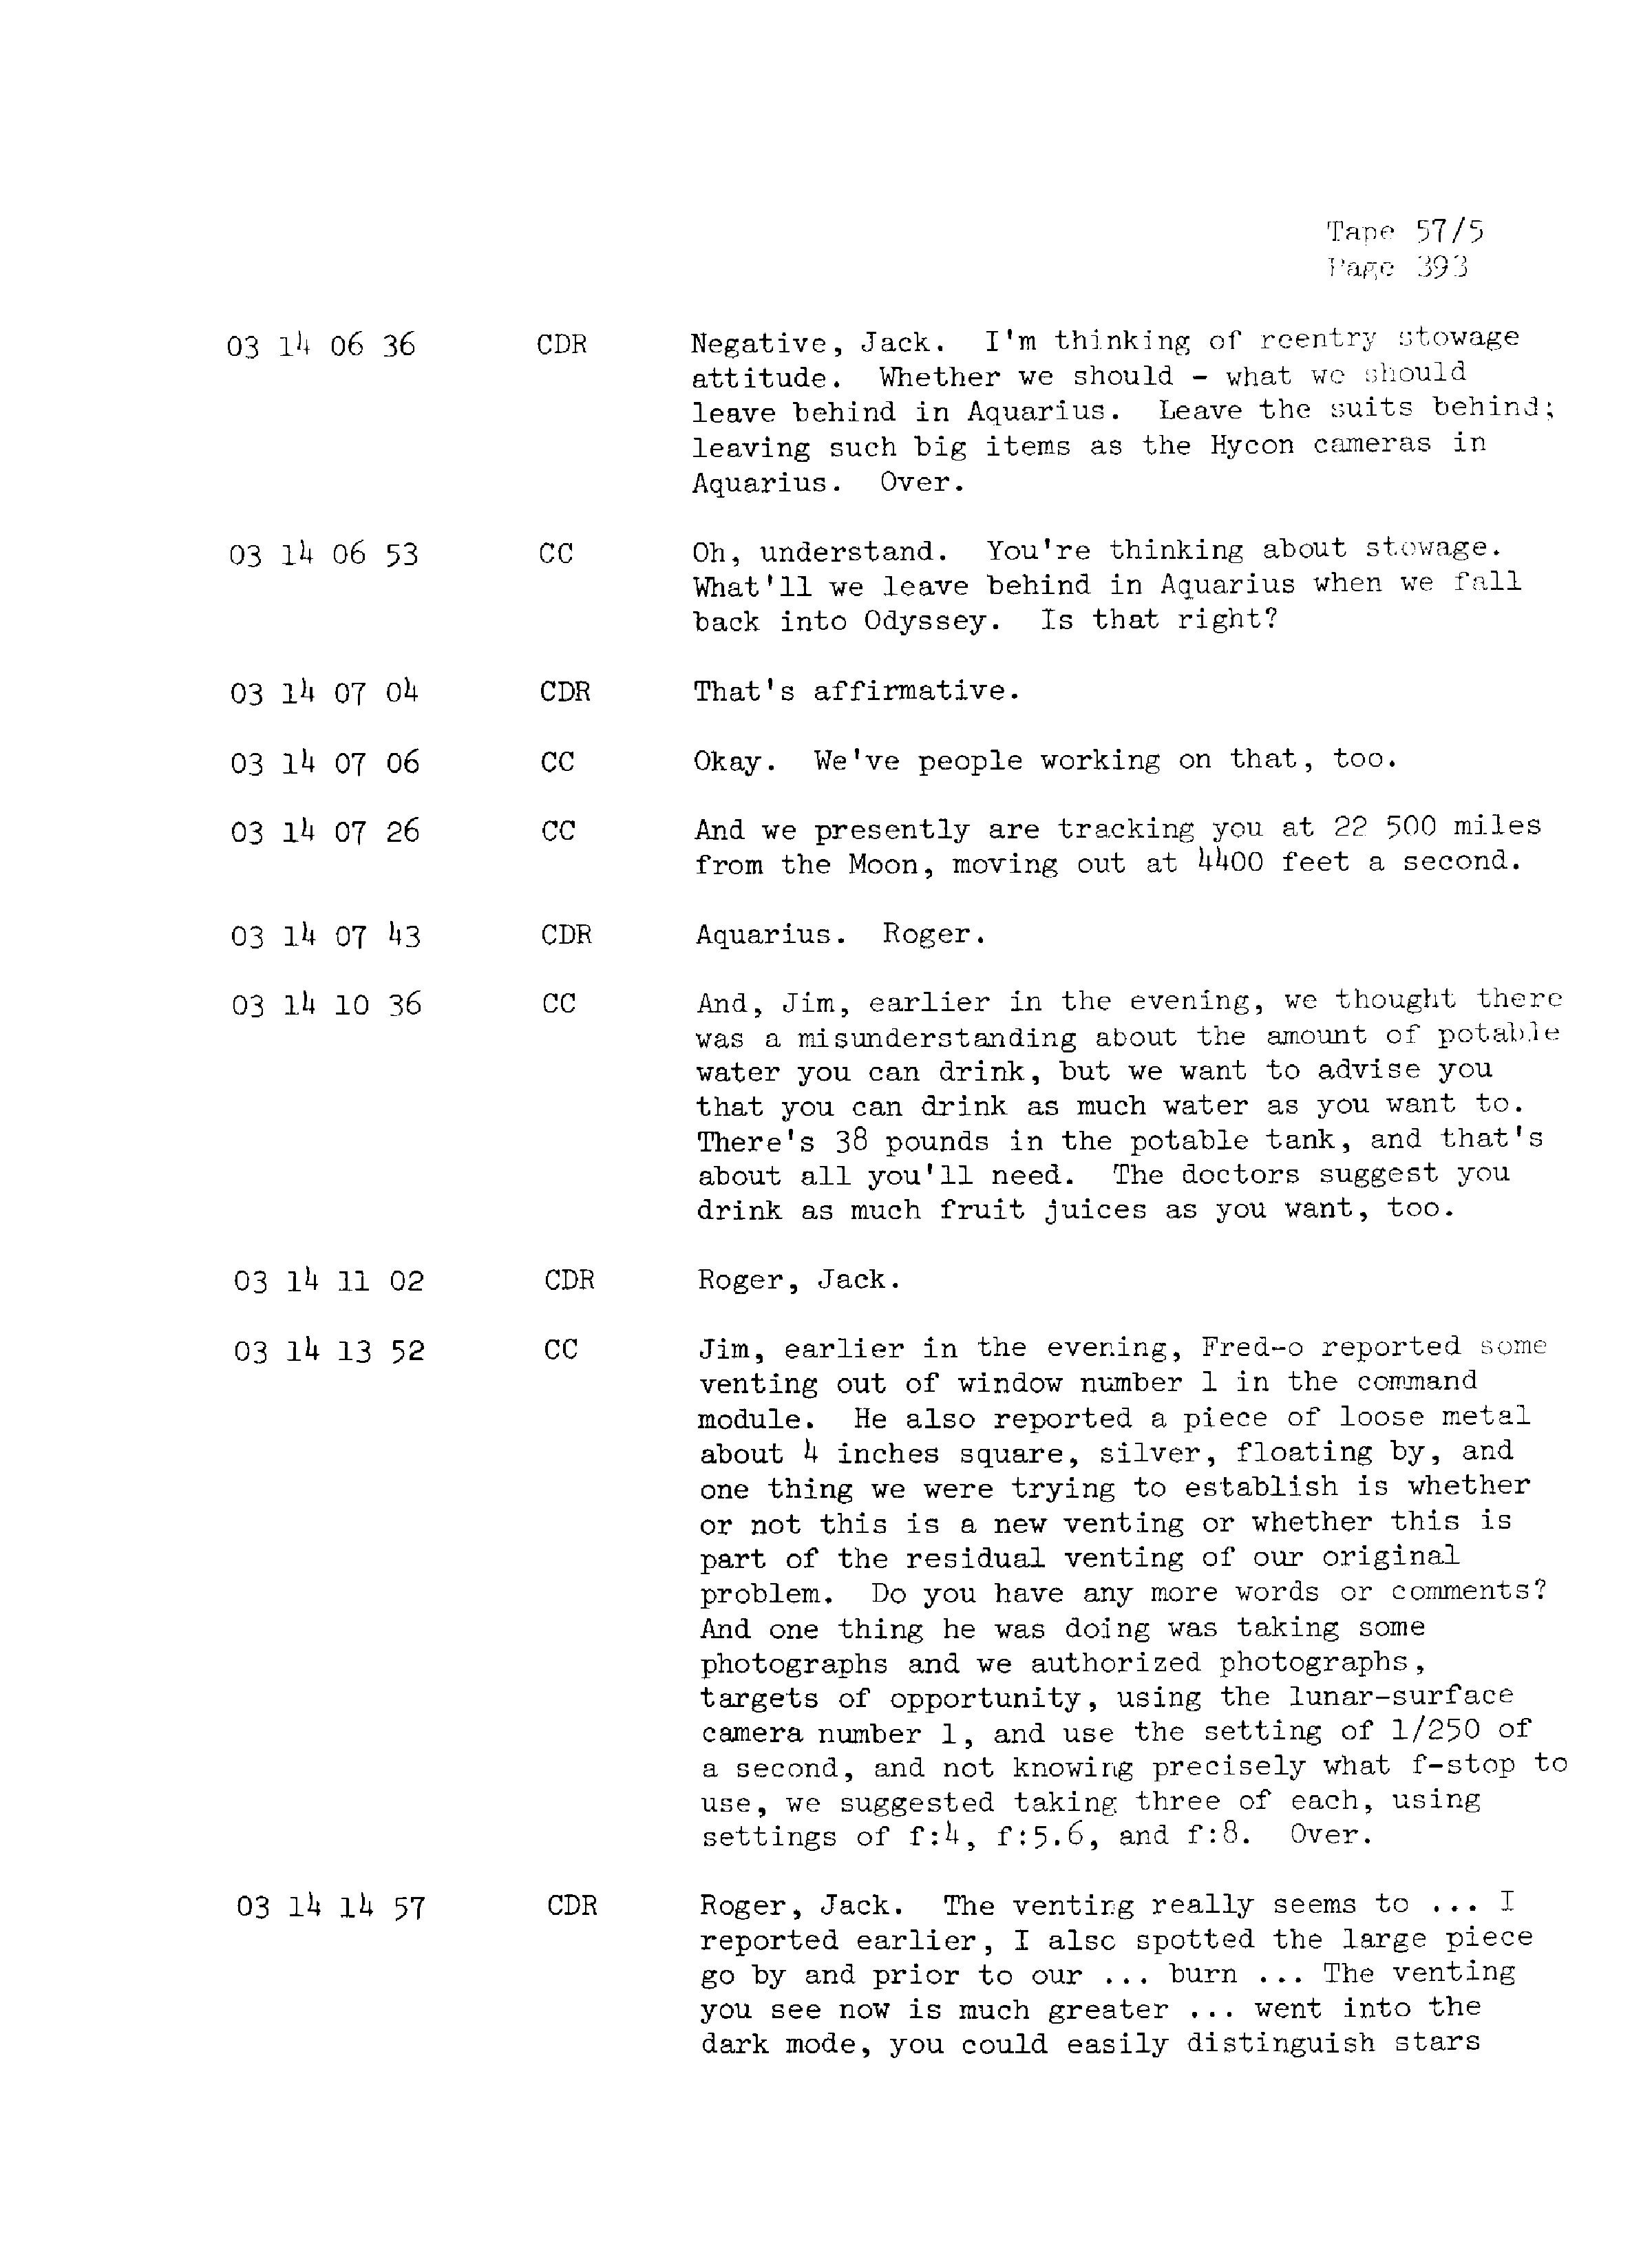 Page 400 of Apollo 13’s original transcript